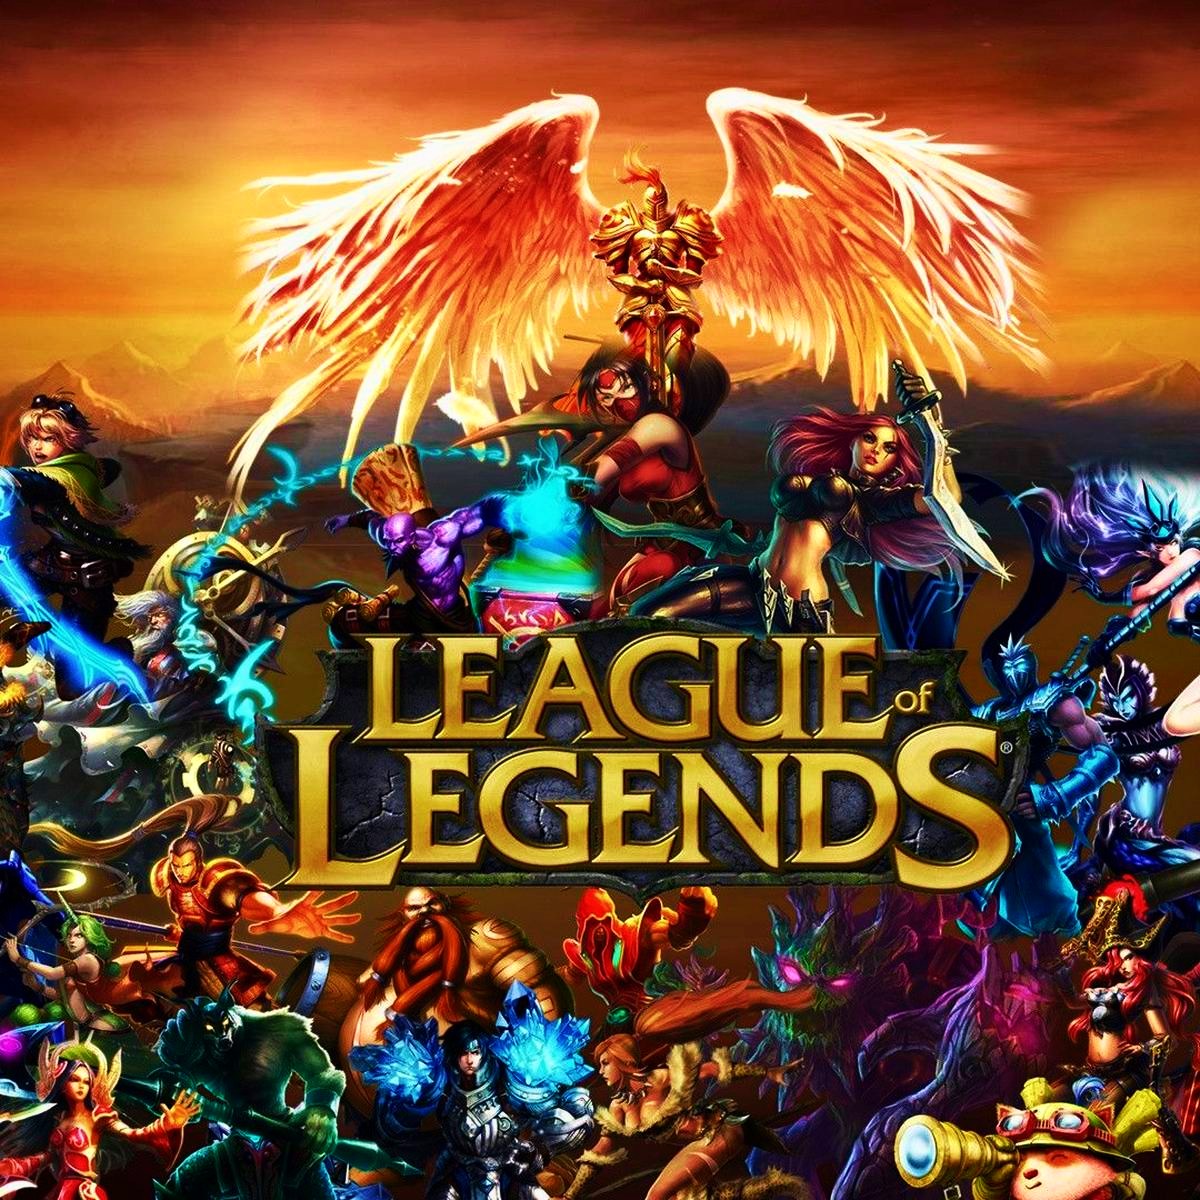 <img src="league.jpg" alt="league of legends promo"/> 